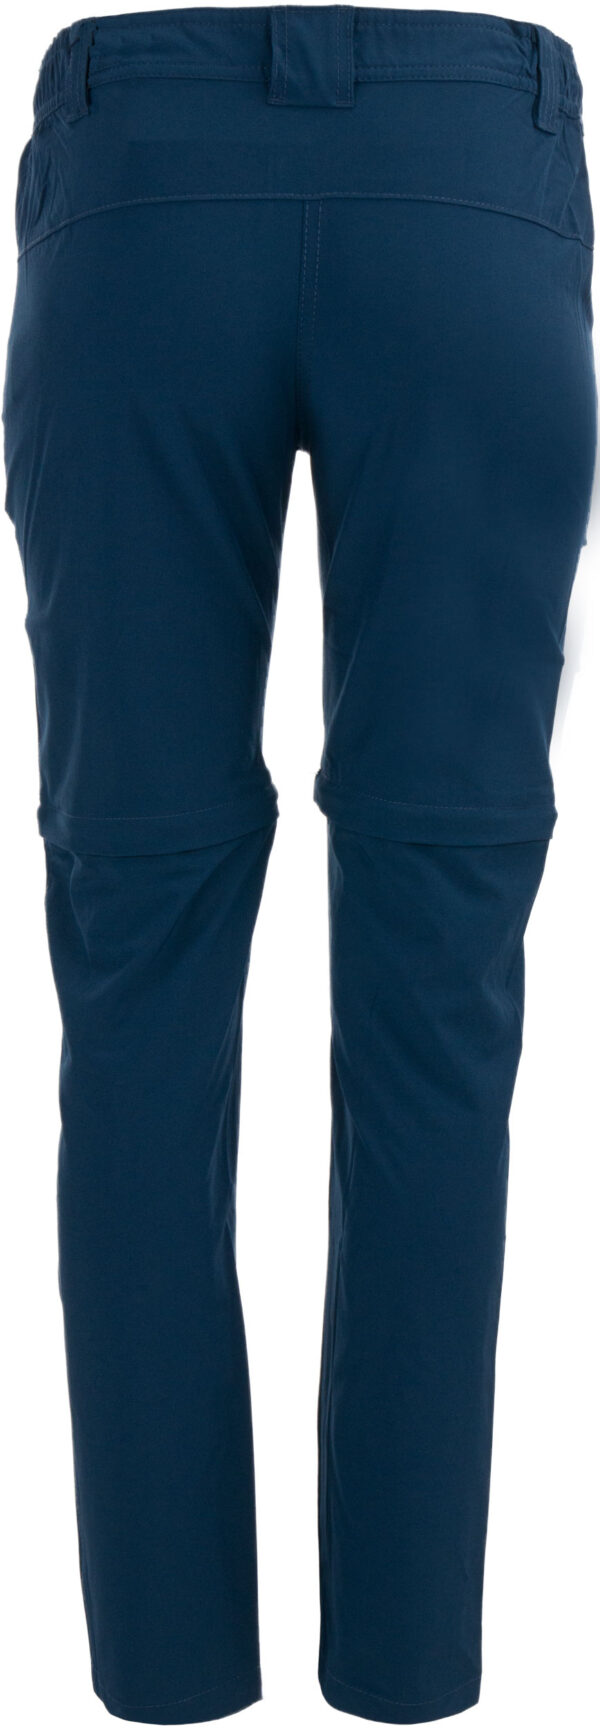 Dámské kalhoty Athl. DPT Manola blue